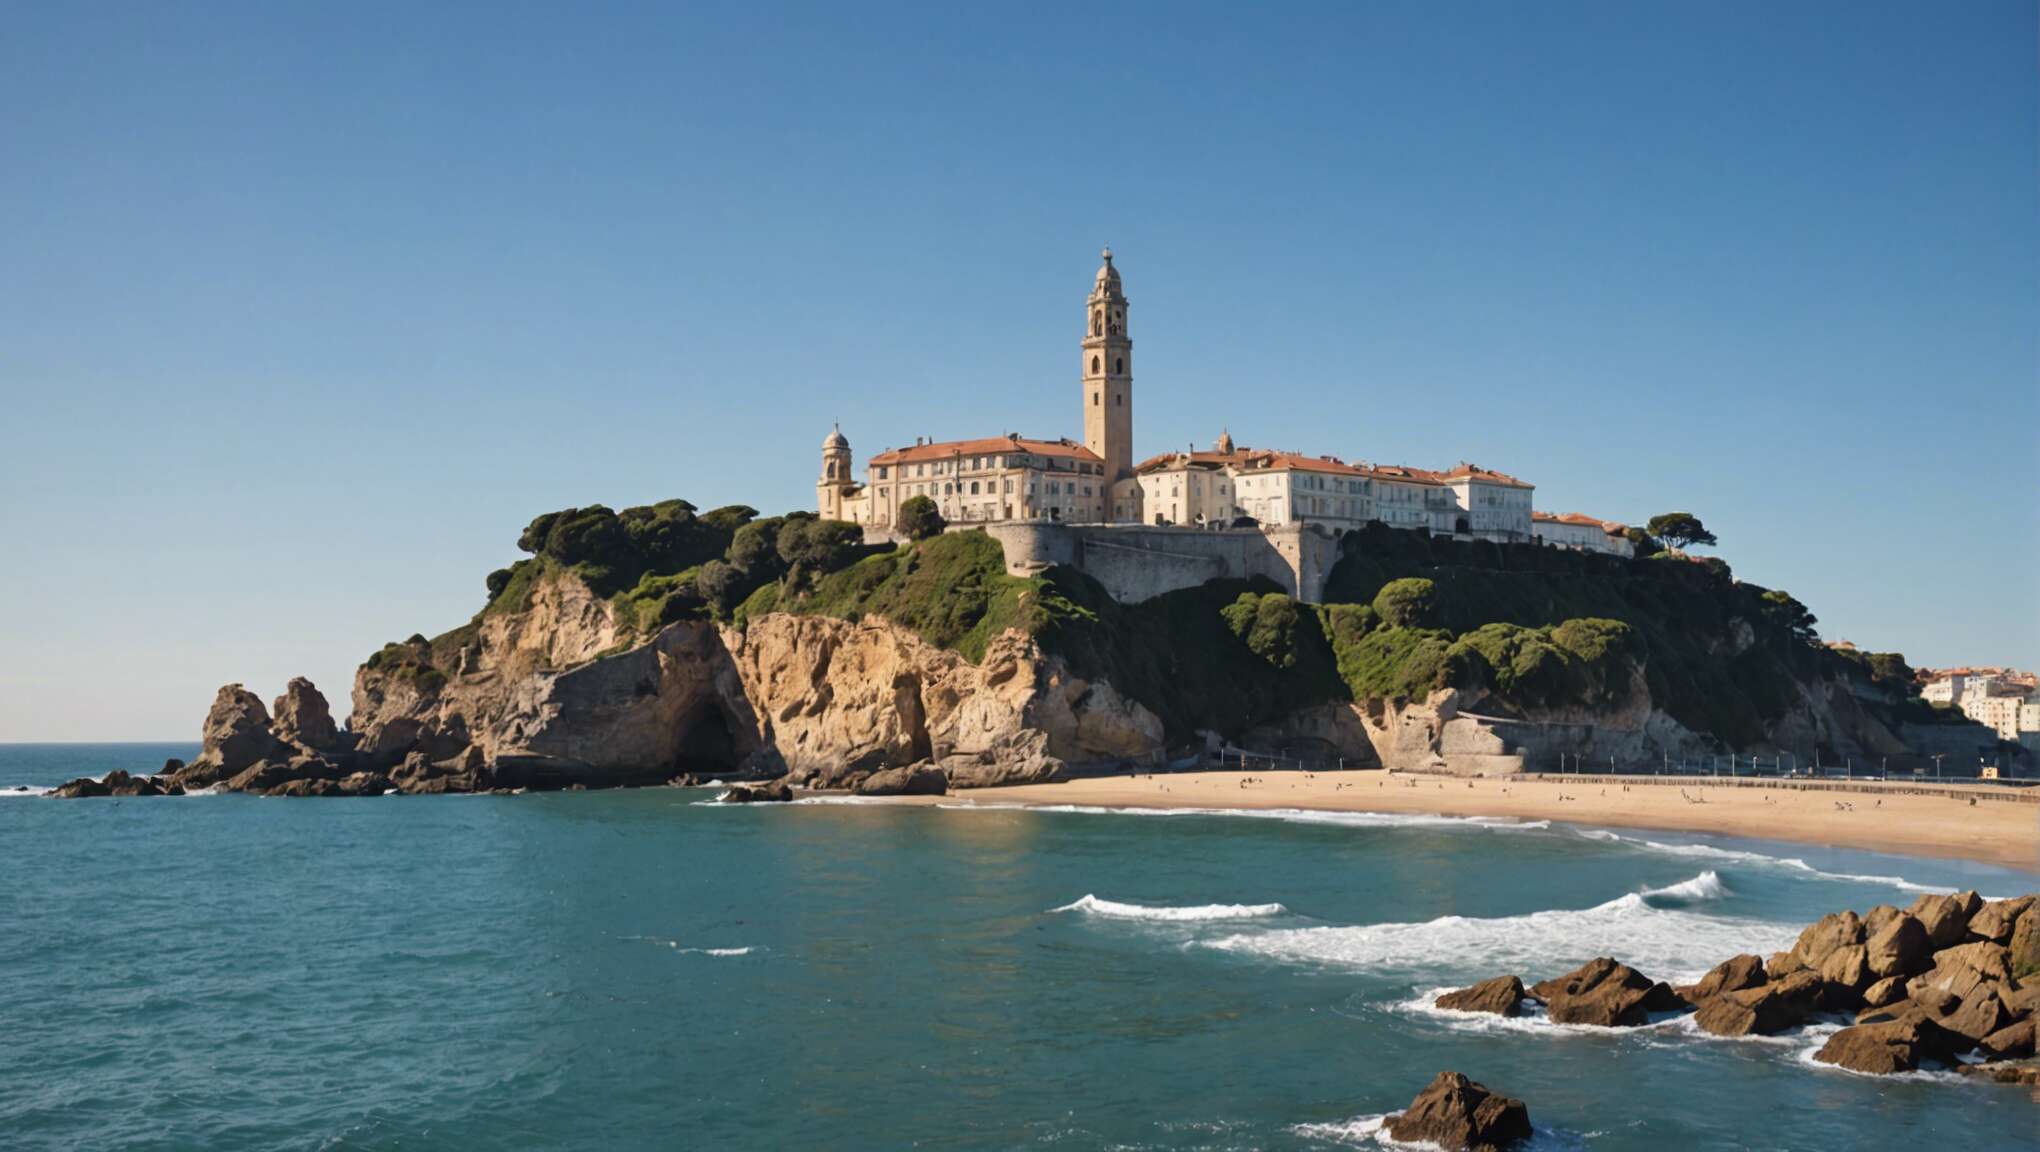 Le rocher de la vierge dans la dynamique touristique de biarritz